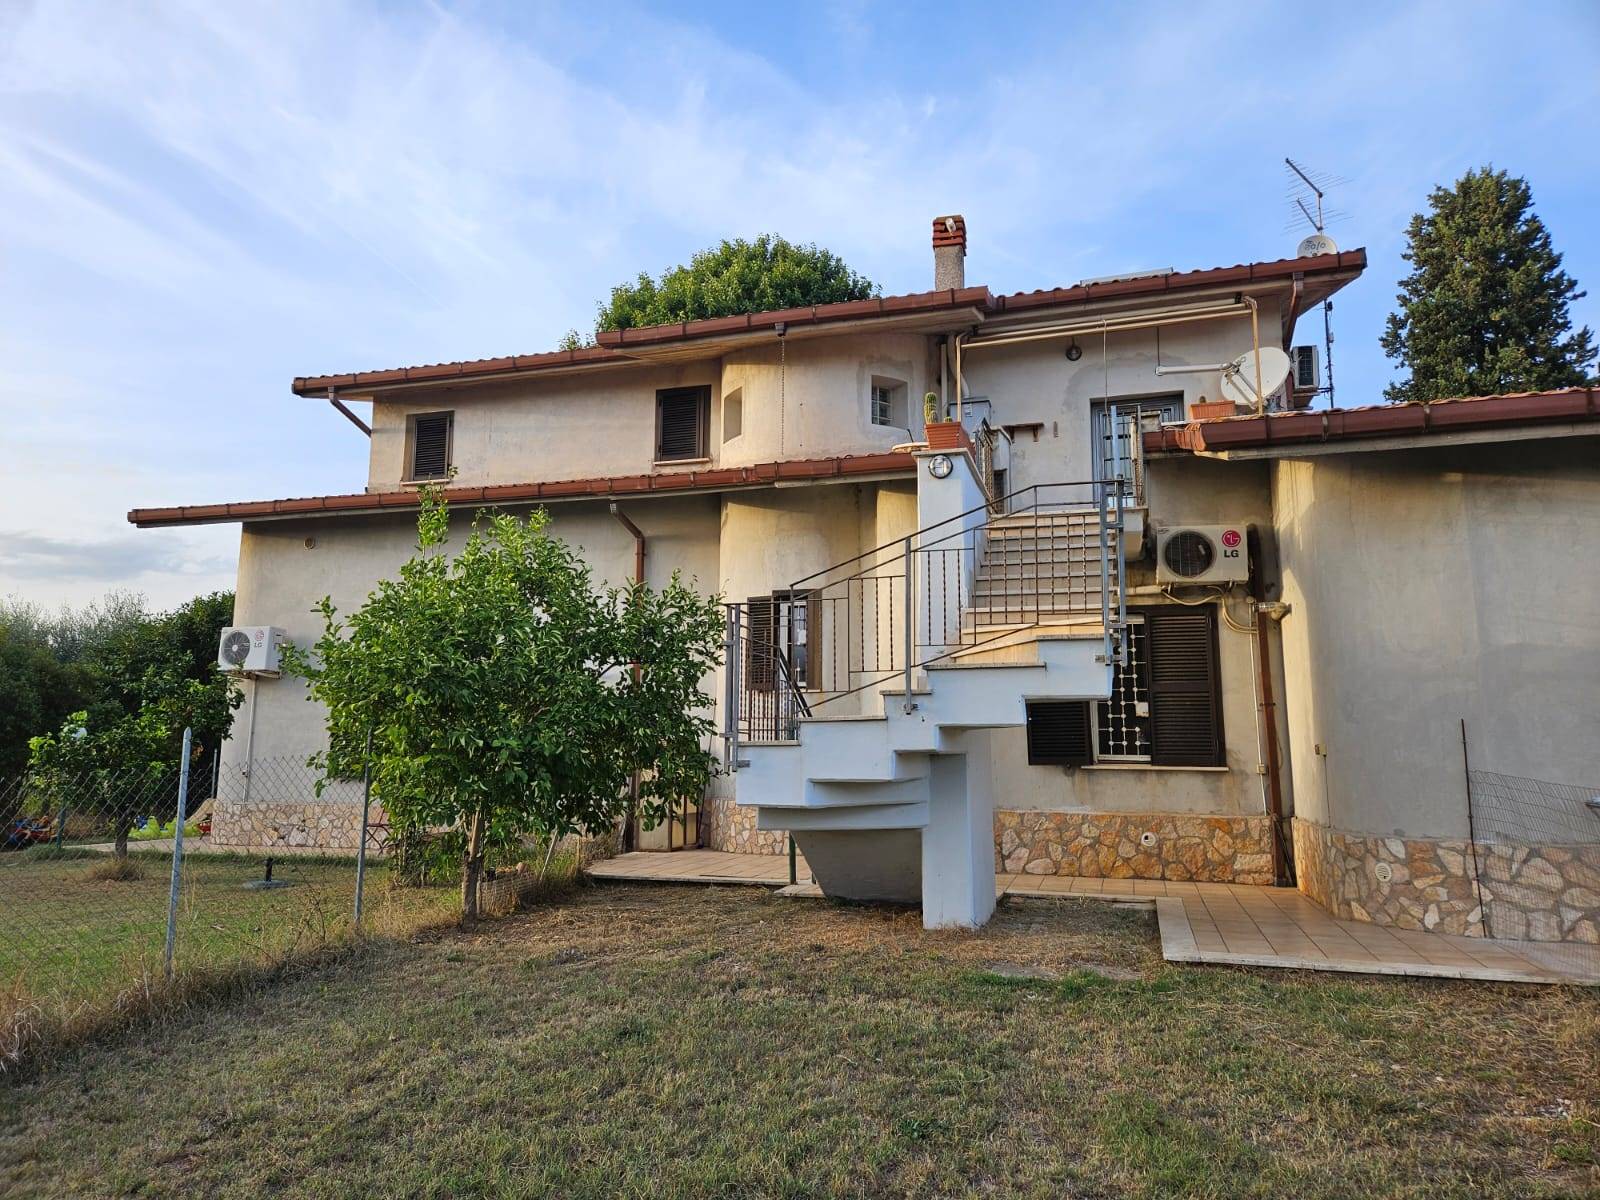 Villa Bifamiliare in vendita a Fiano Romano, 3 locali, prezzo € 214.000 | PortaleAgenzieImmobiliari.it